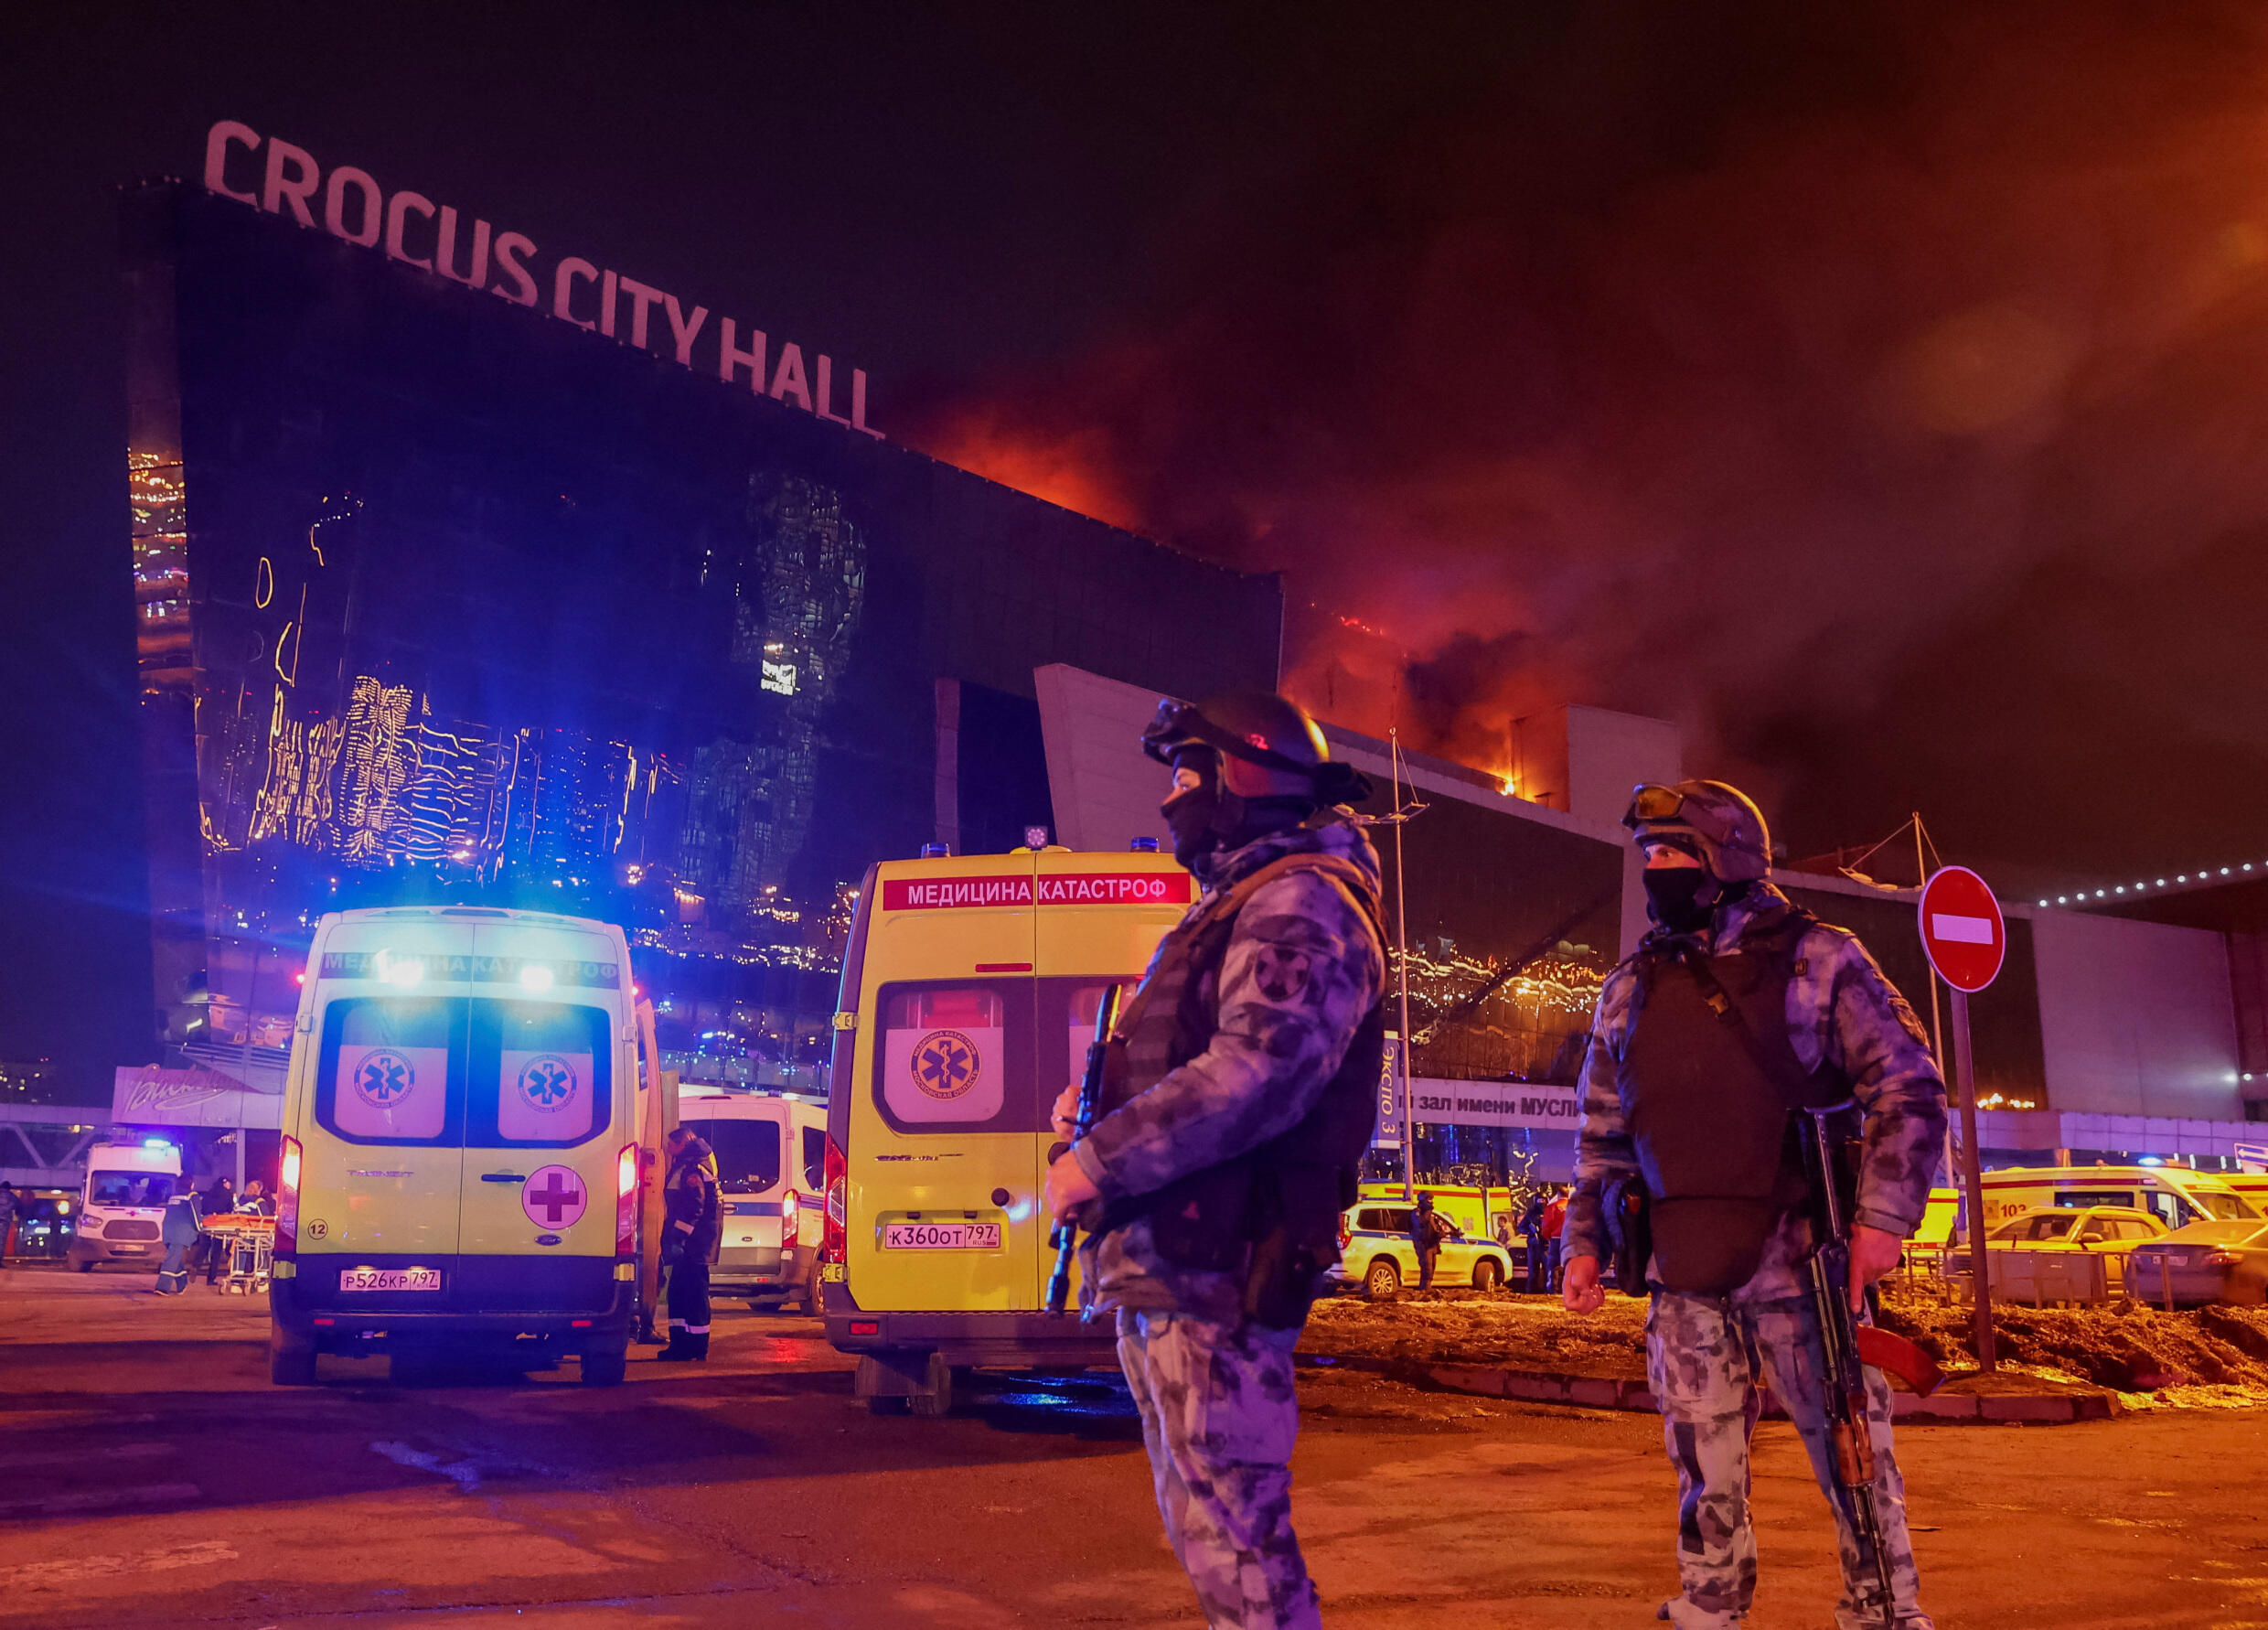 Condenan Gobiernos el tiroteo que dejó 40 muertos en Crocus City Hall en Moscú